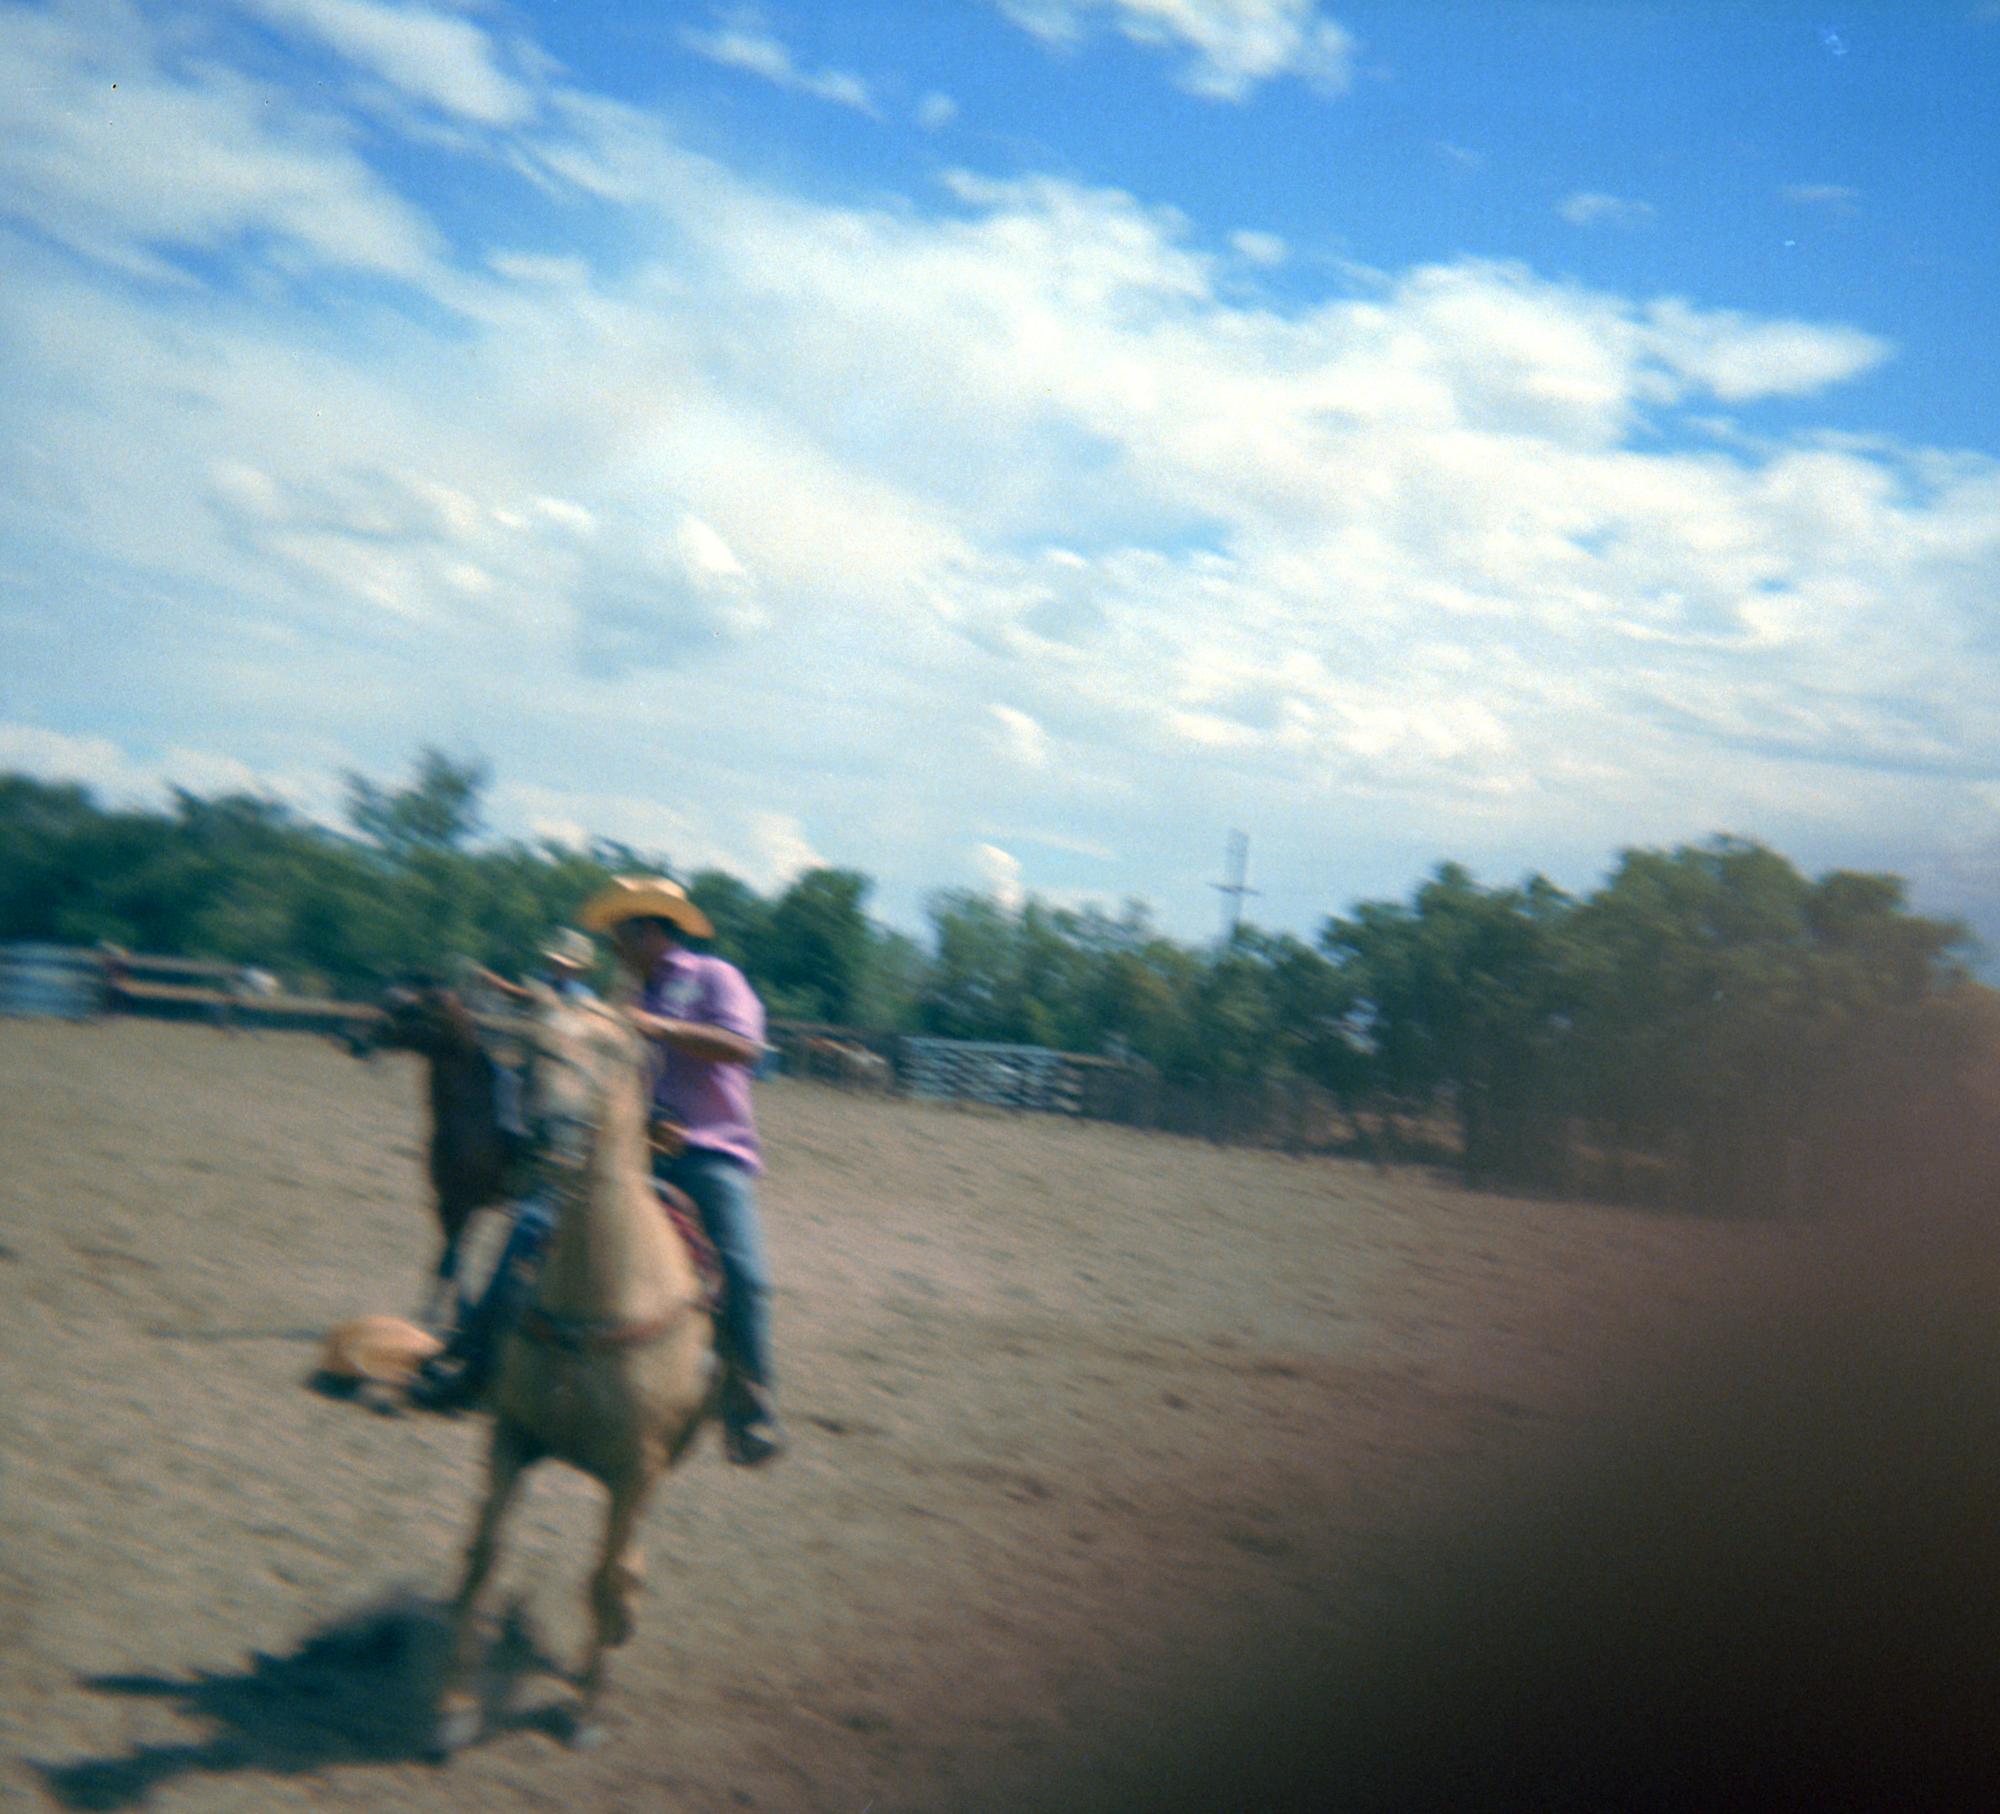 El Paso Texas (1970s) - Rodeo #02